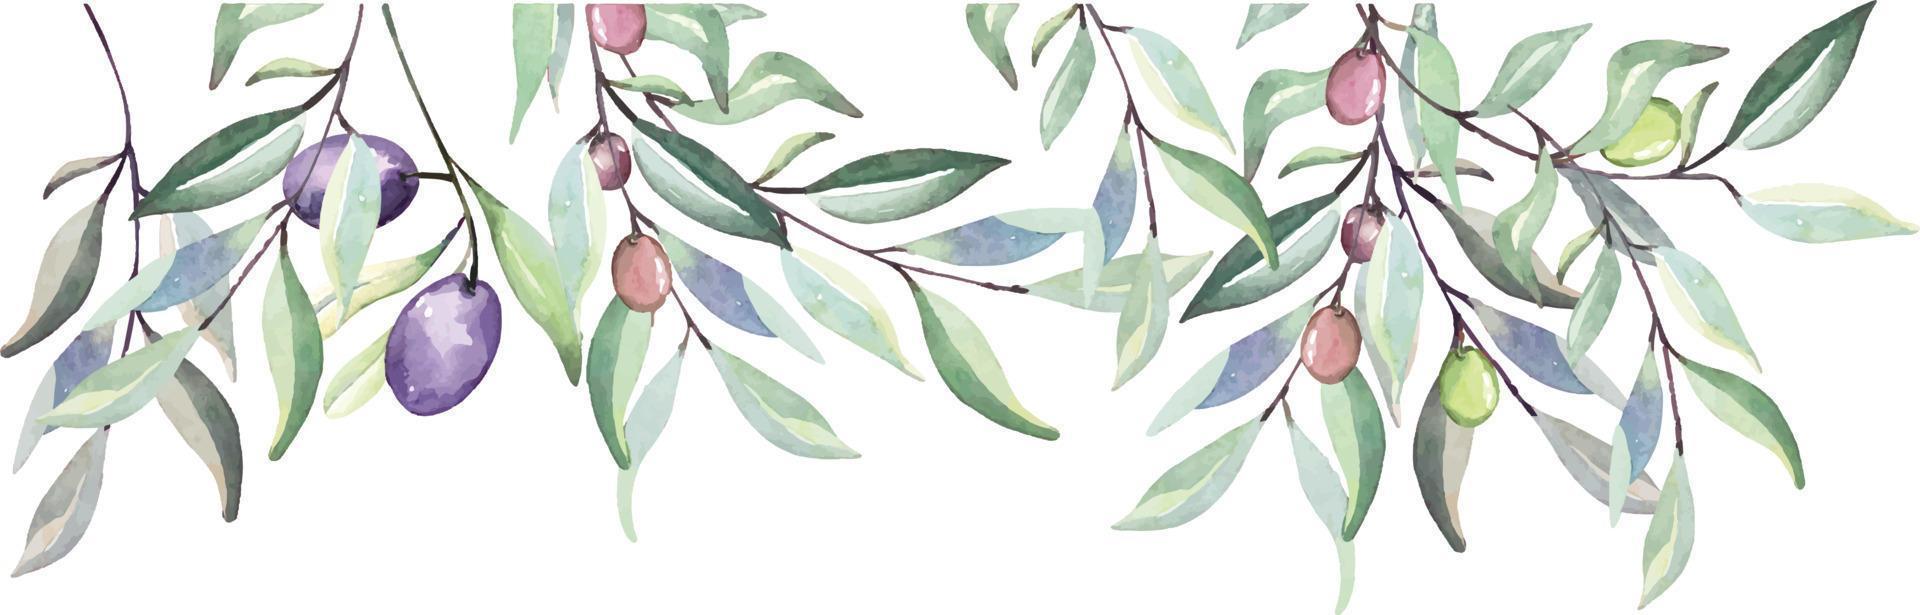 aquarela de ramos de oliveira para decorar a natureza de cartões de convite no jardim style.botanical vintage. vetor